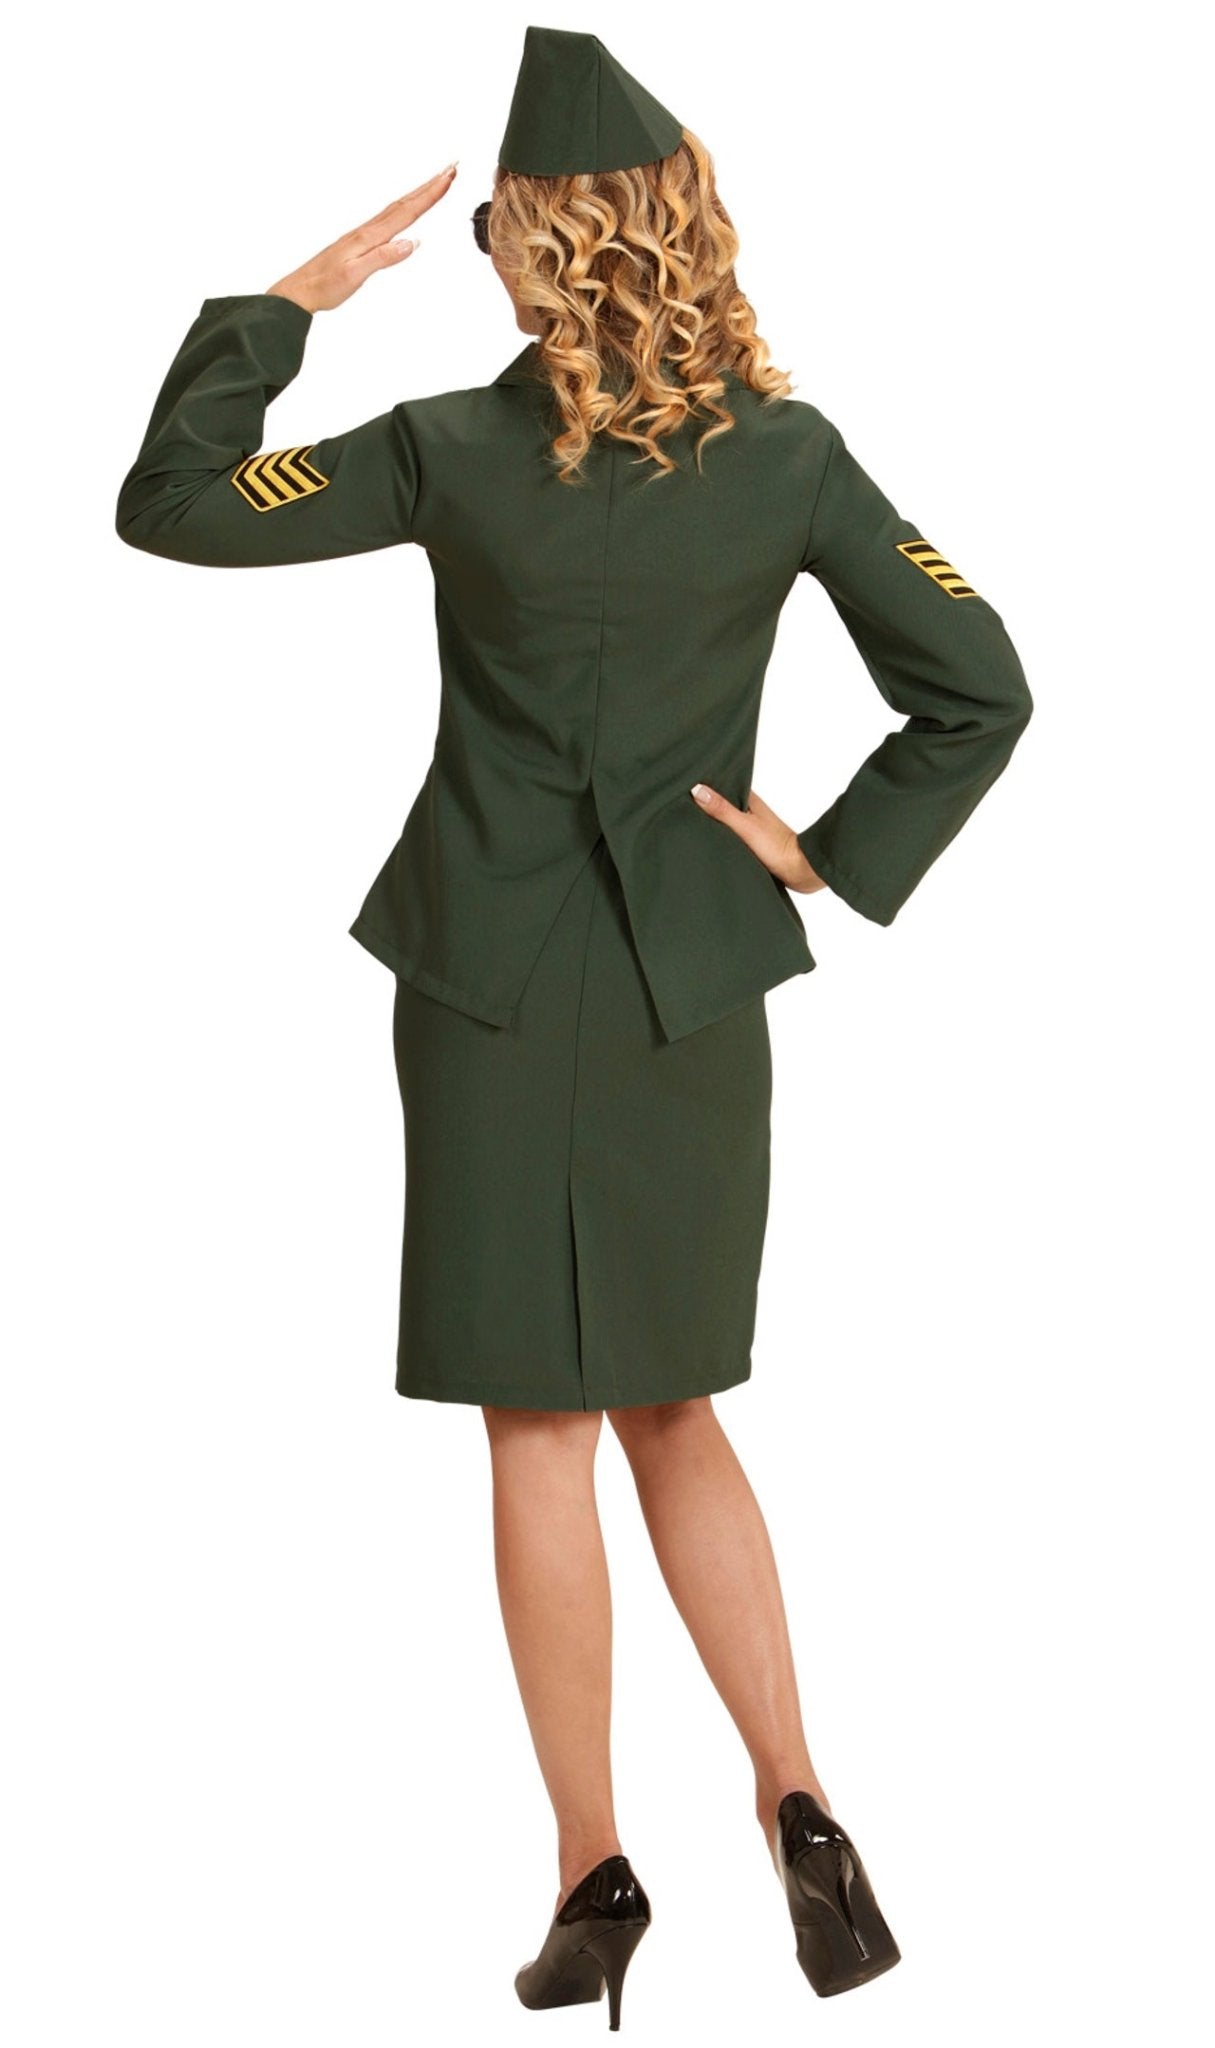 Disfraz de Soldado Militar para Mujer. Envío en 24h